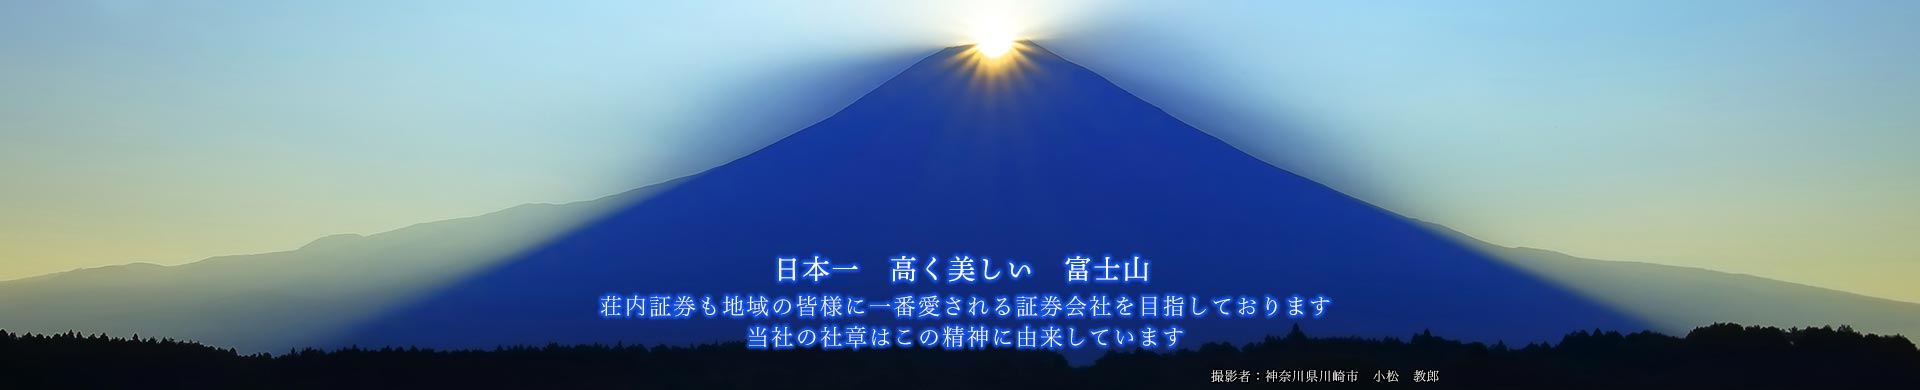 日本一高く美しい富士山　荘内証券も地域の皆様に一番愛される証券会社を目指しております。当社の社章はこの精神に由来しています。